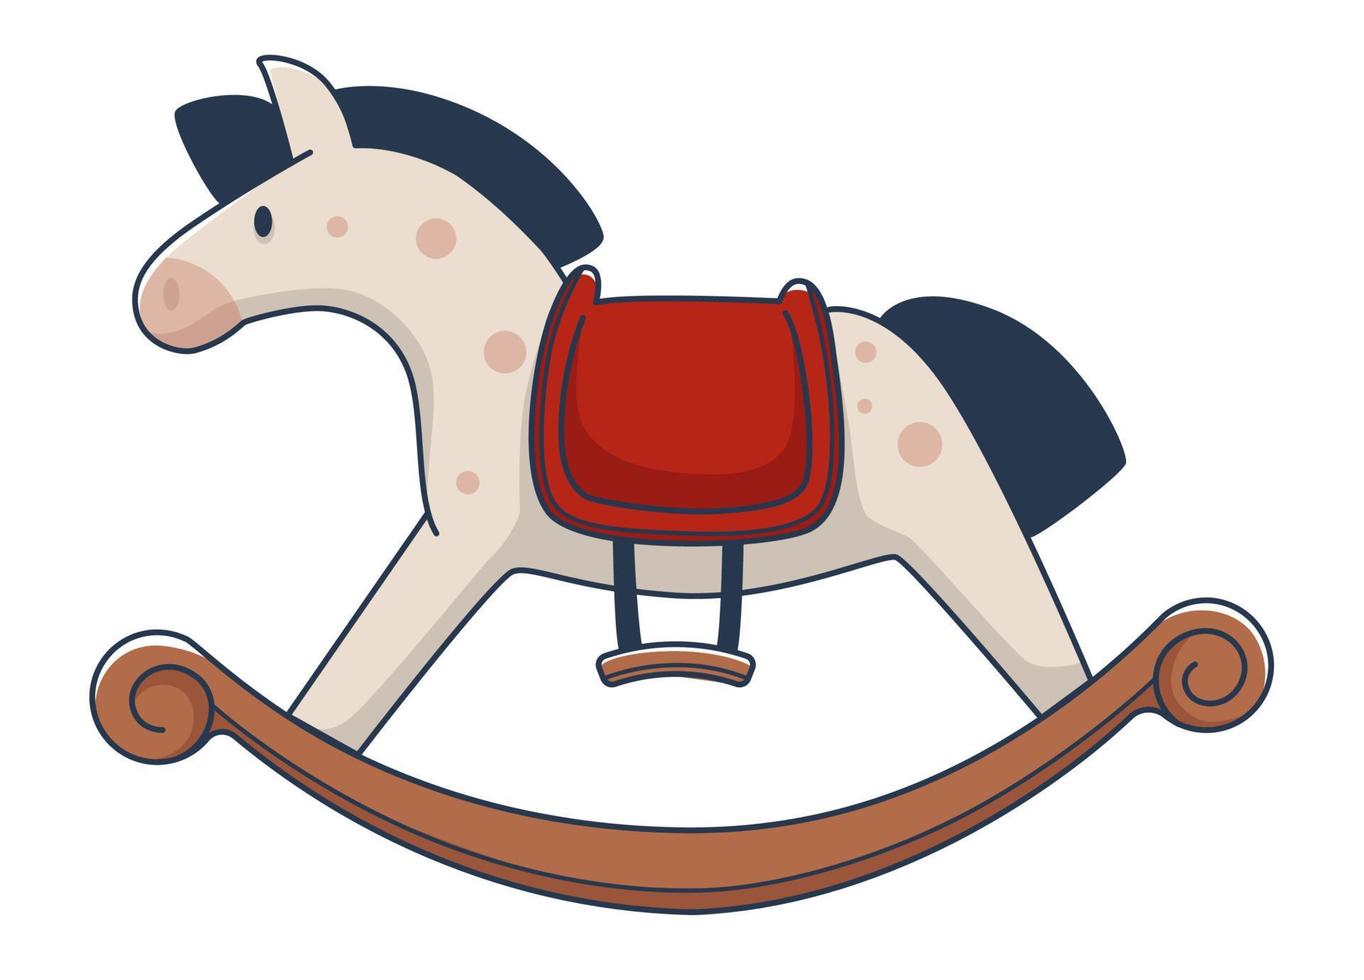 Pony o caballo de peluche con base de madera para mecerse vector